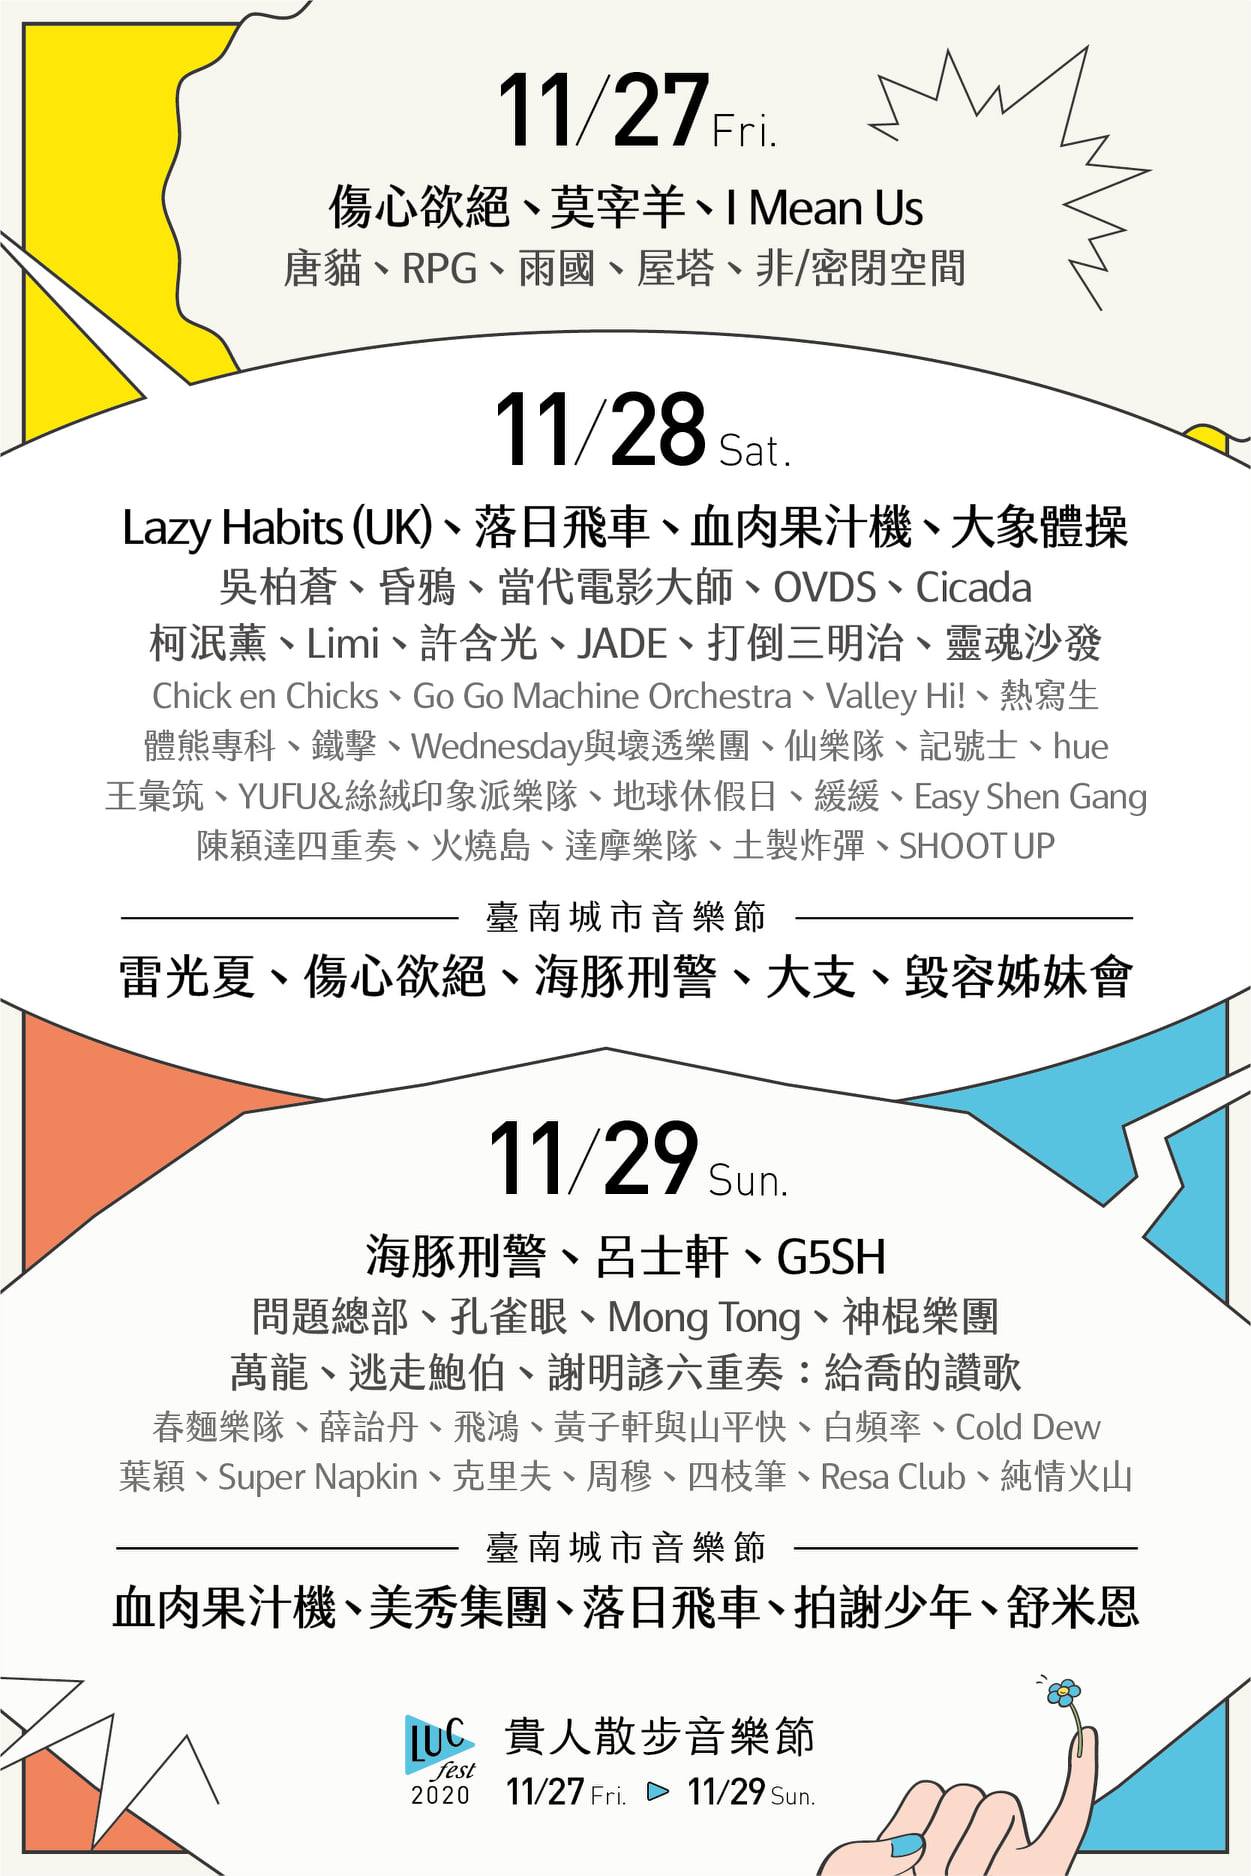 2020森山市集。把美術館變成一座山｜11/28、11/29感受台南最美市集的高度